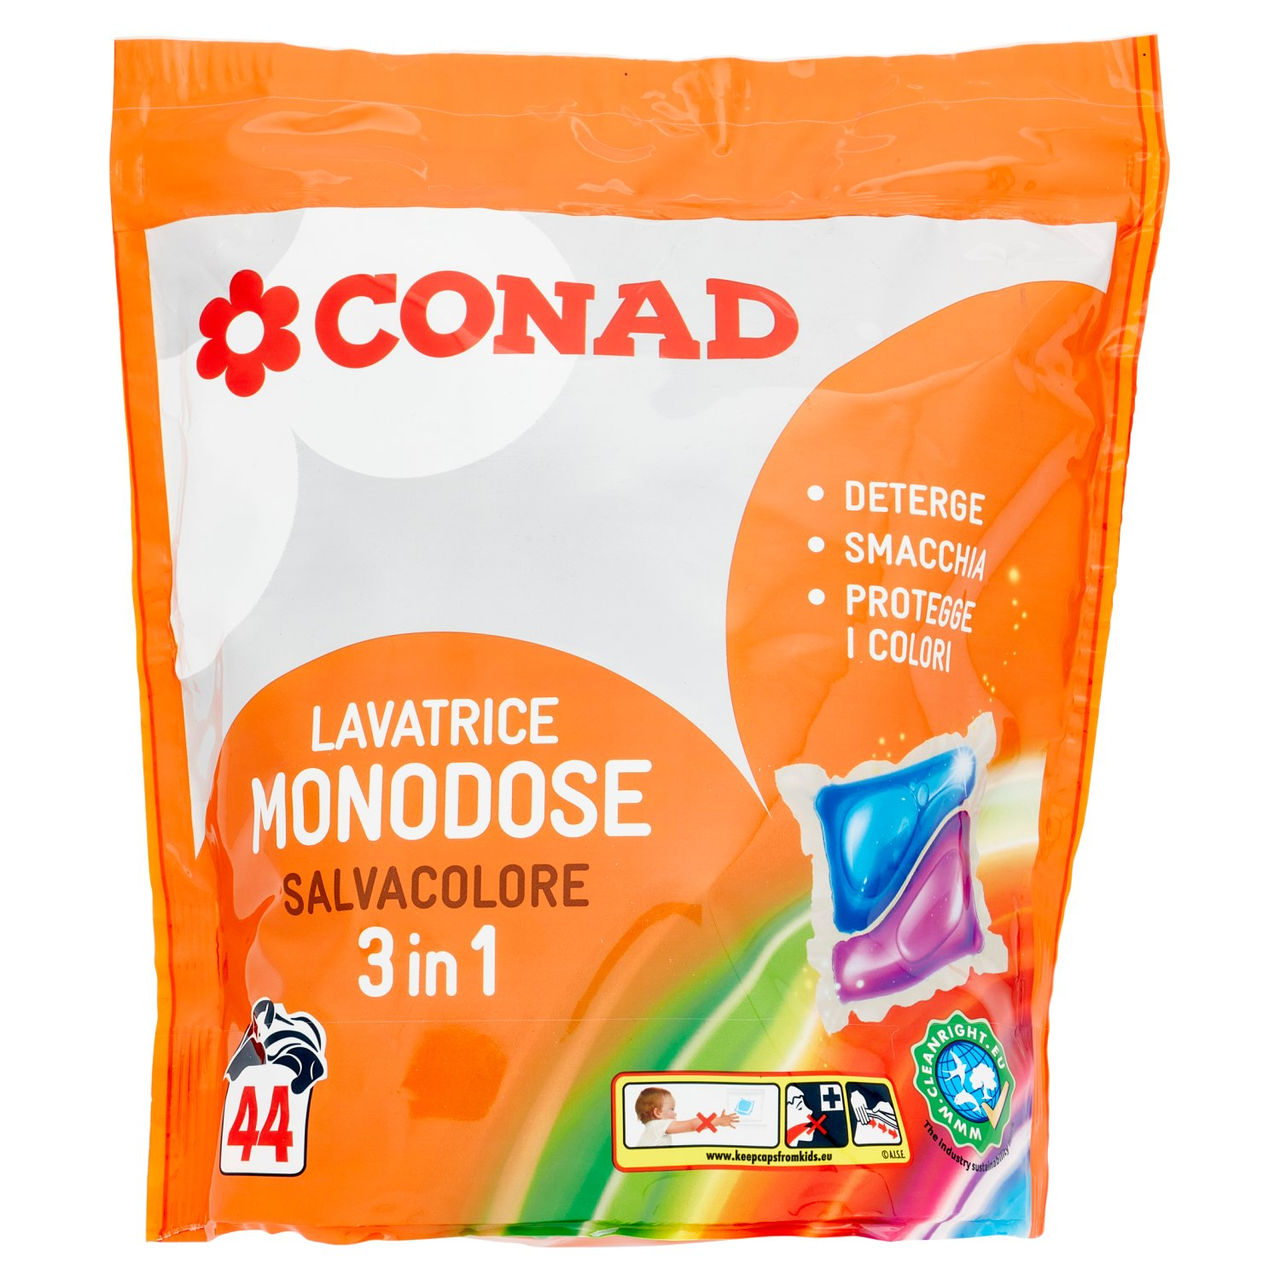 CONAD Lavatrice Monodose Salvacolore 3 in 1 44 x 24.5 ml